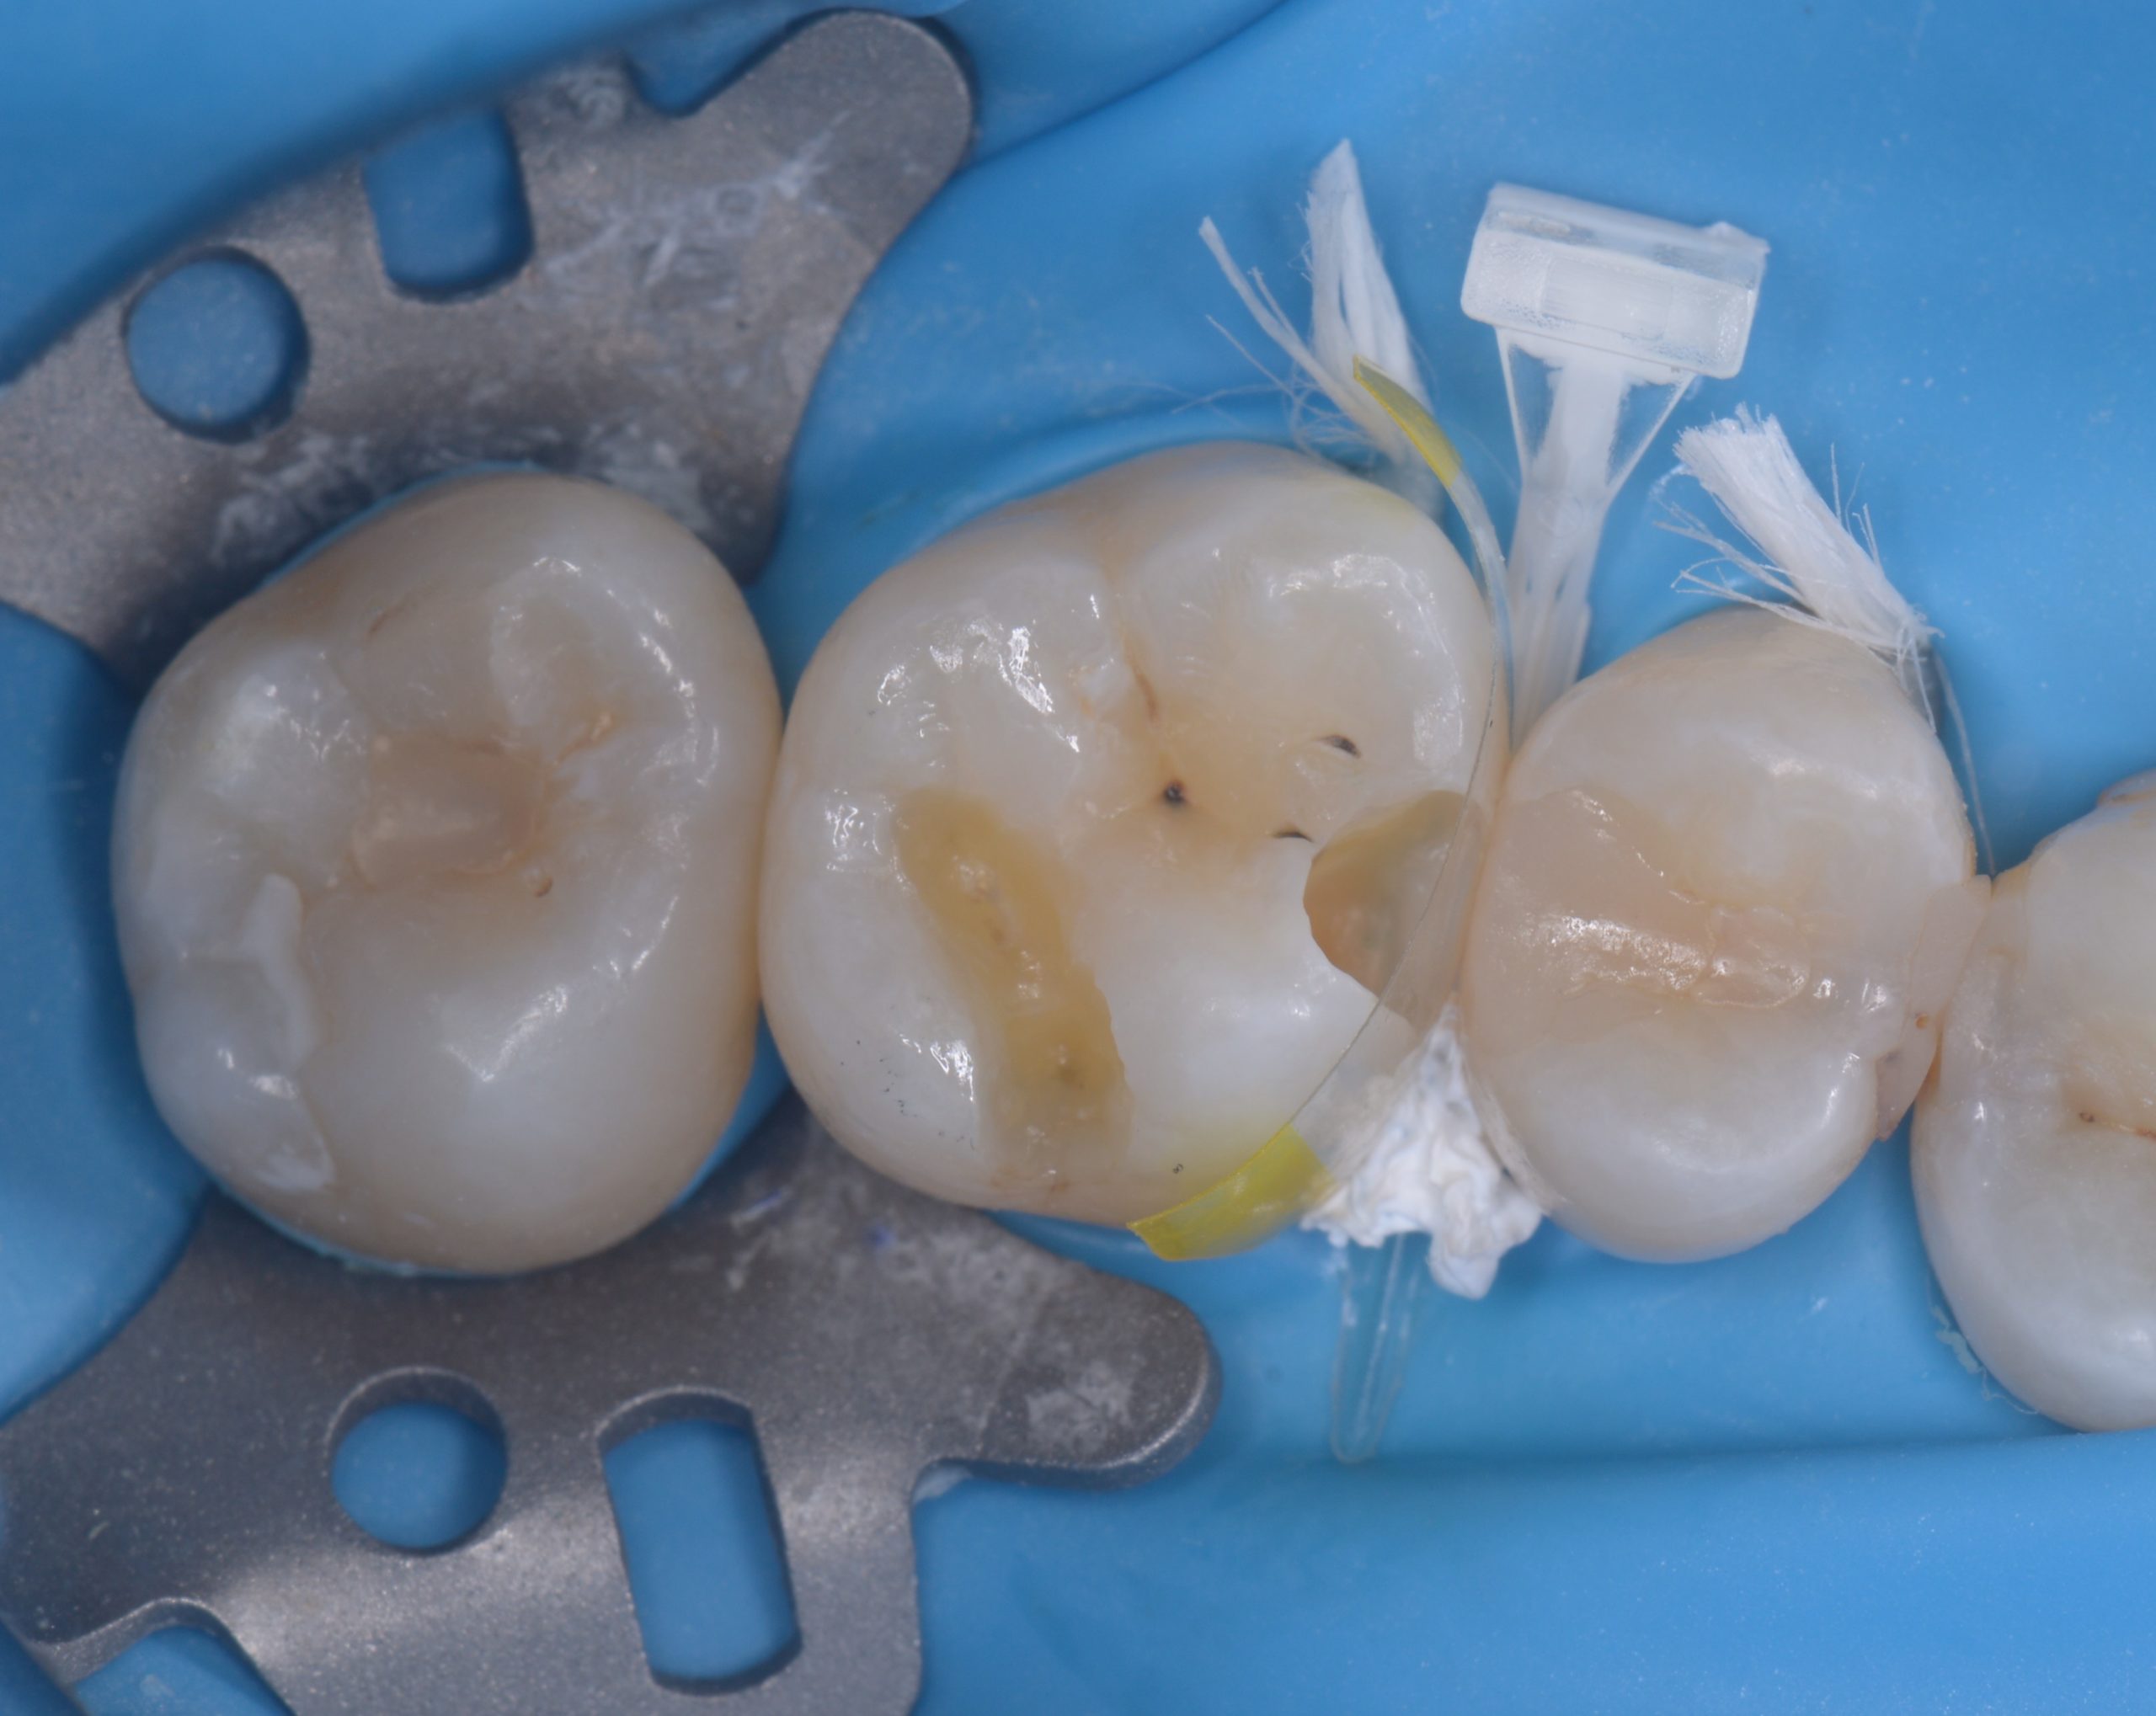 ダイレクトボンディングにより歯の間の虫歯を修復したケース